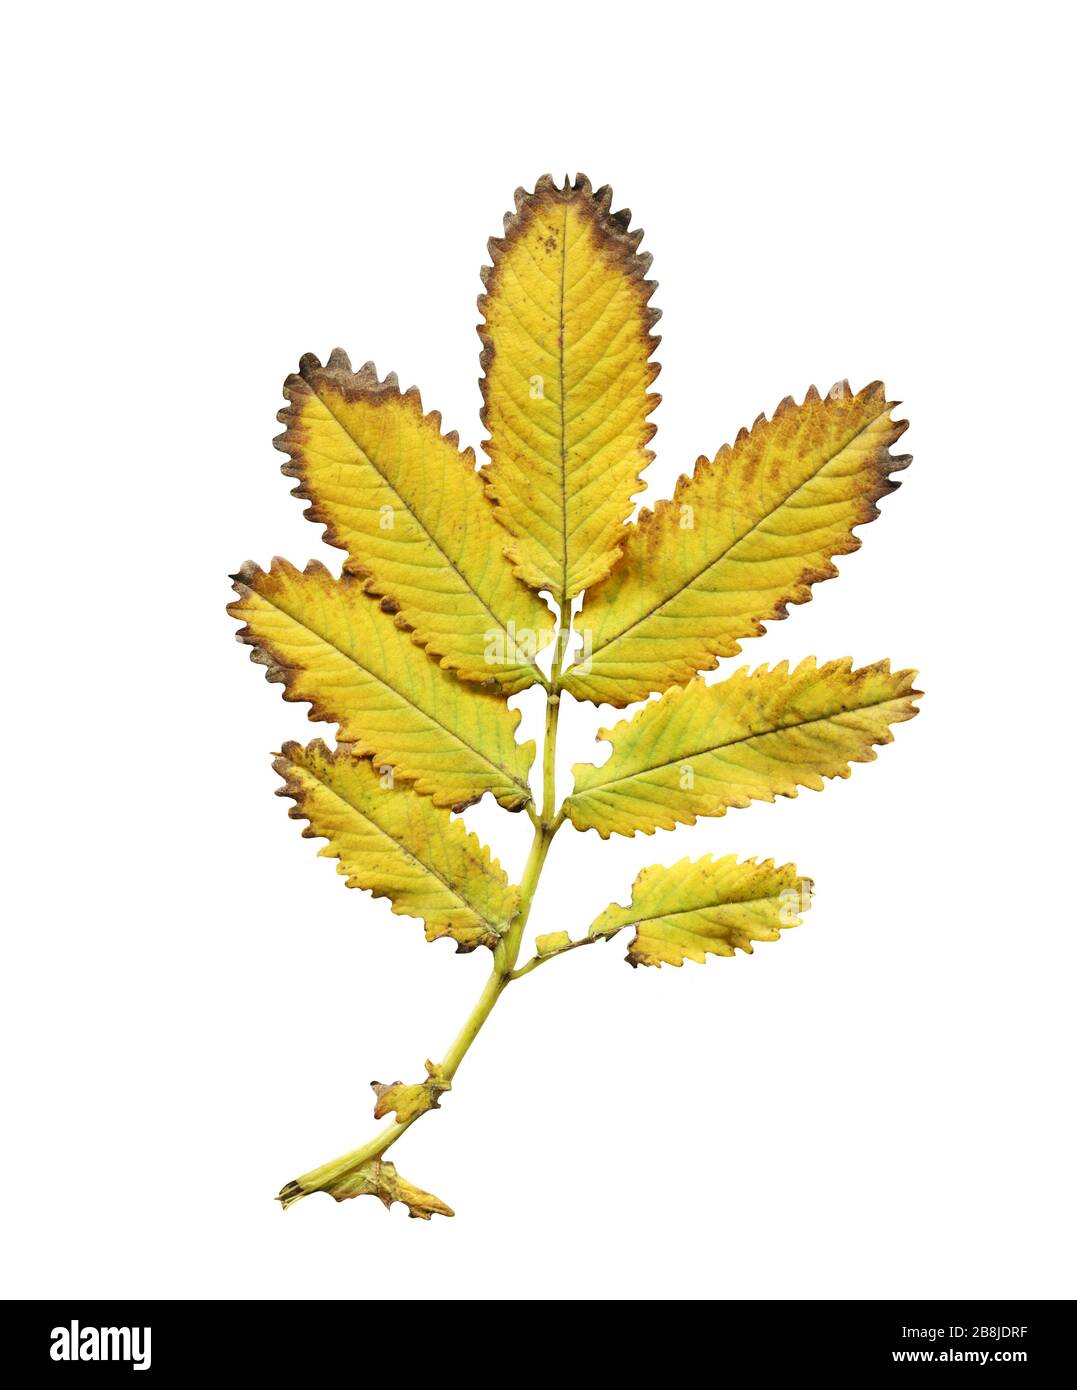 Sanguisorba obtusa leaf isolated on white background Stock Photo - Alamy